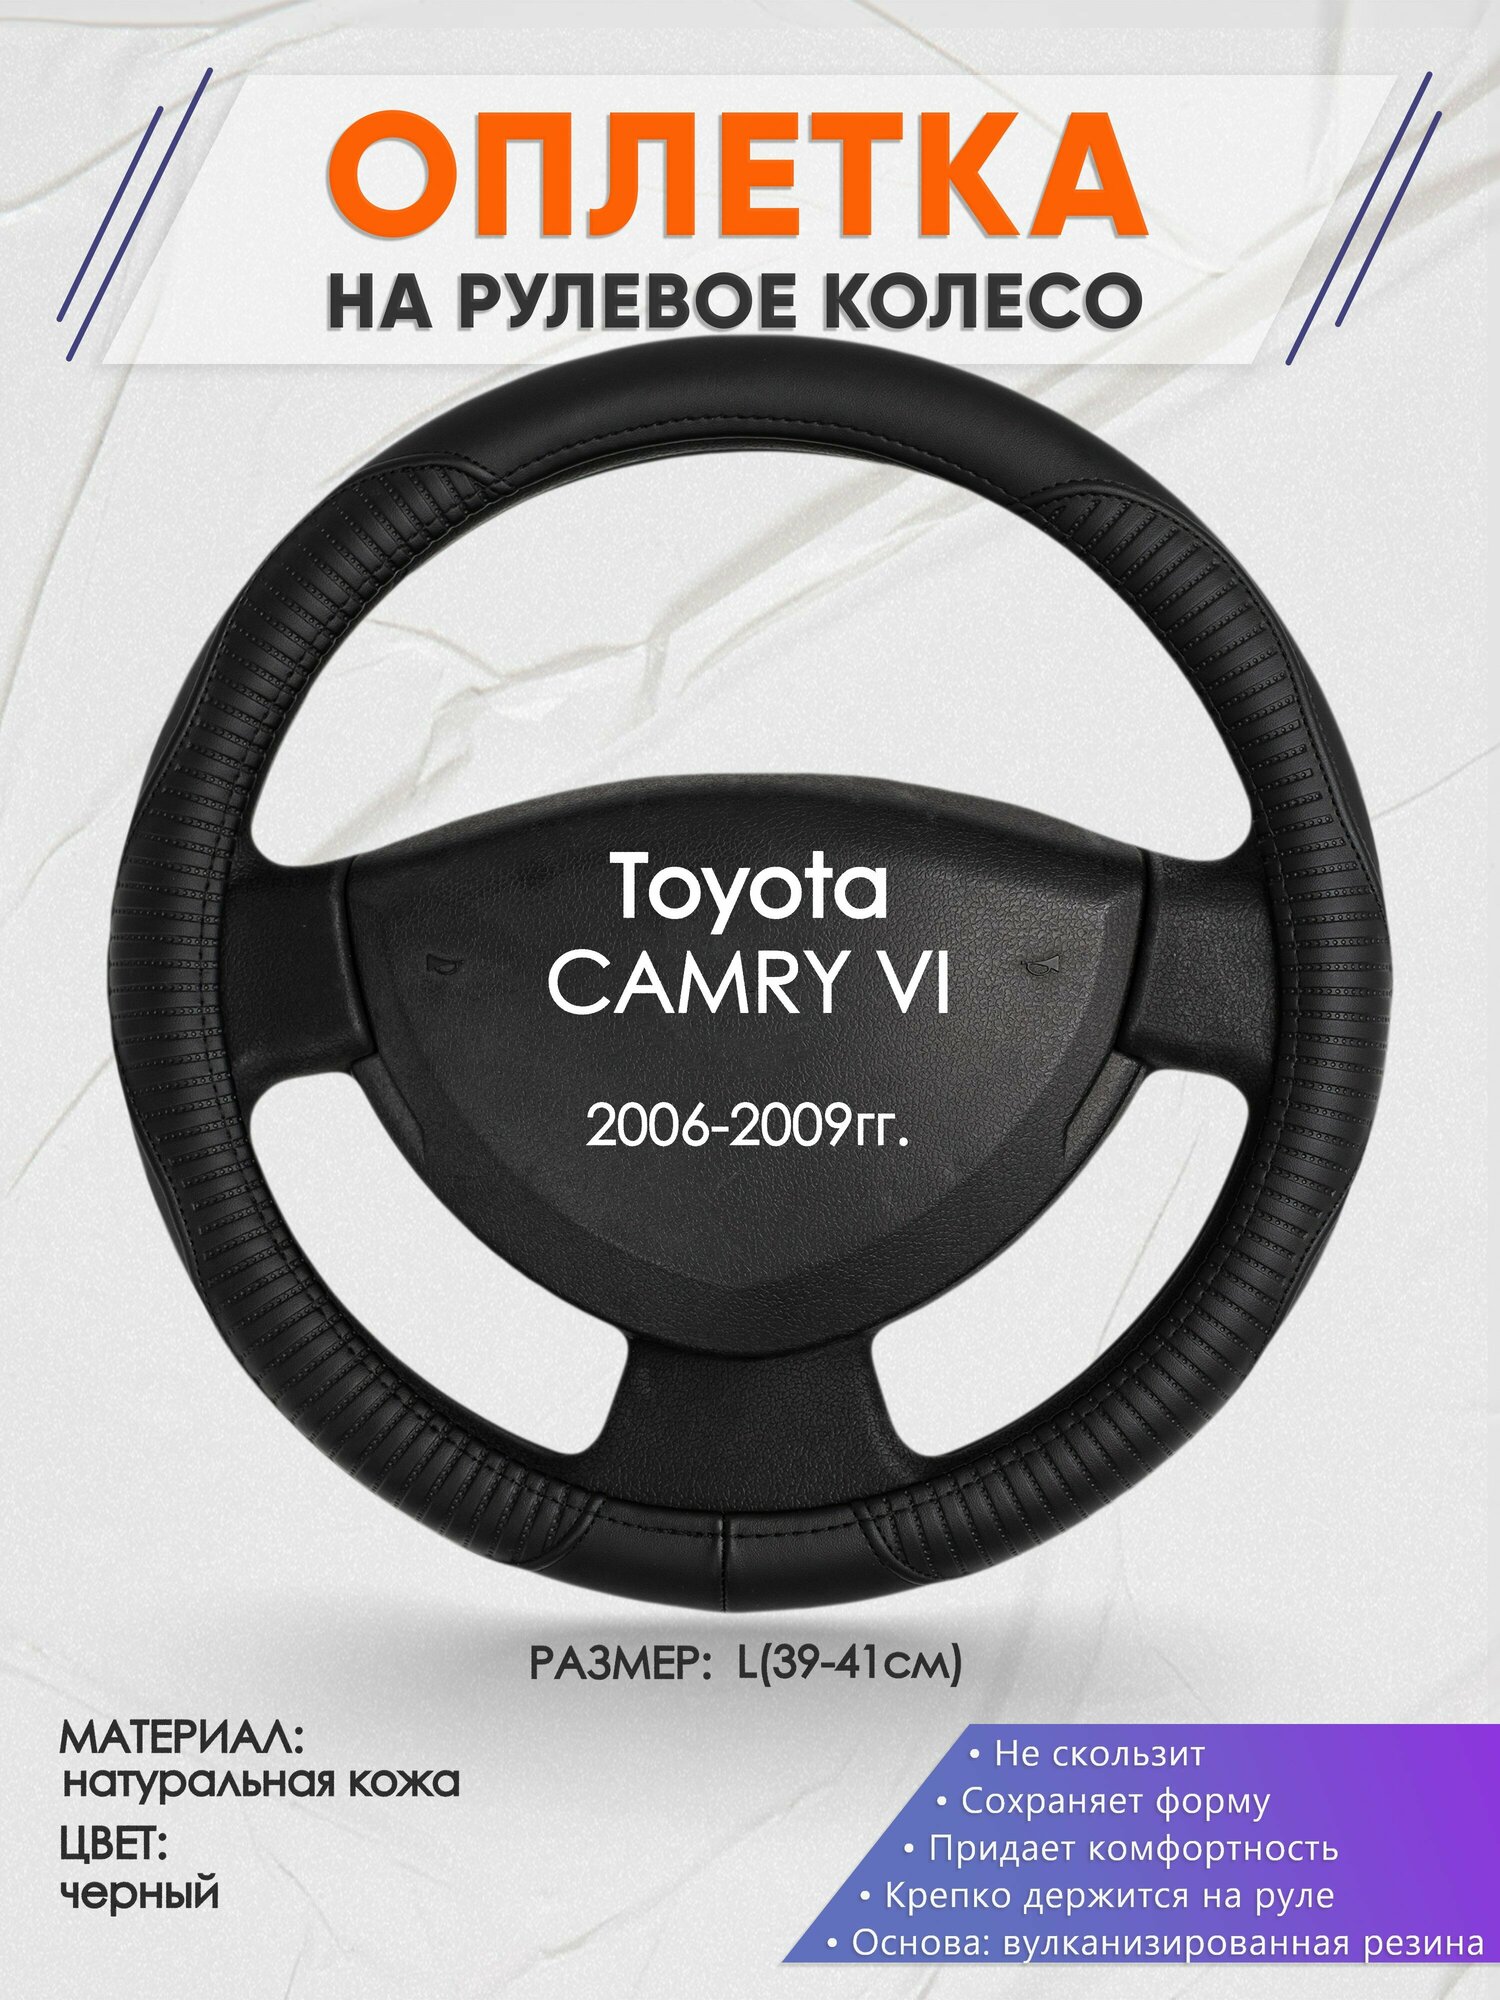 Оплетка на руль для Toyota CAMRY 6(Тойота Камри 6) 2006-2009, L(39-41см), Натуральная кожа 22